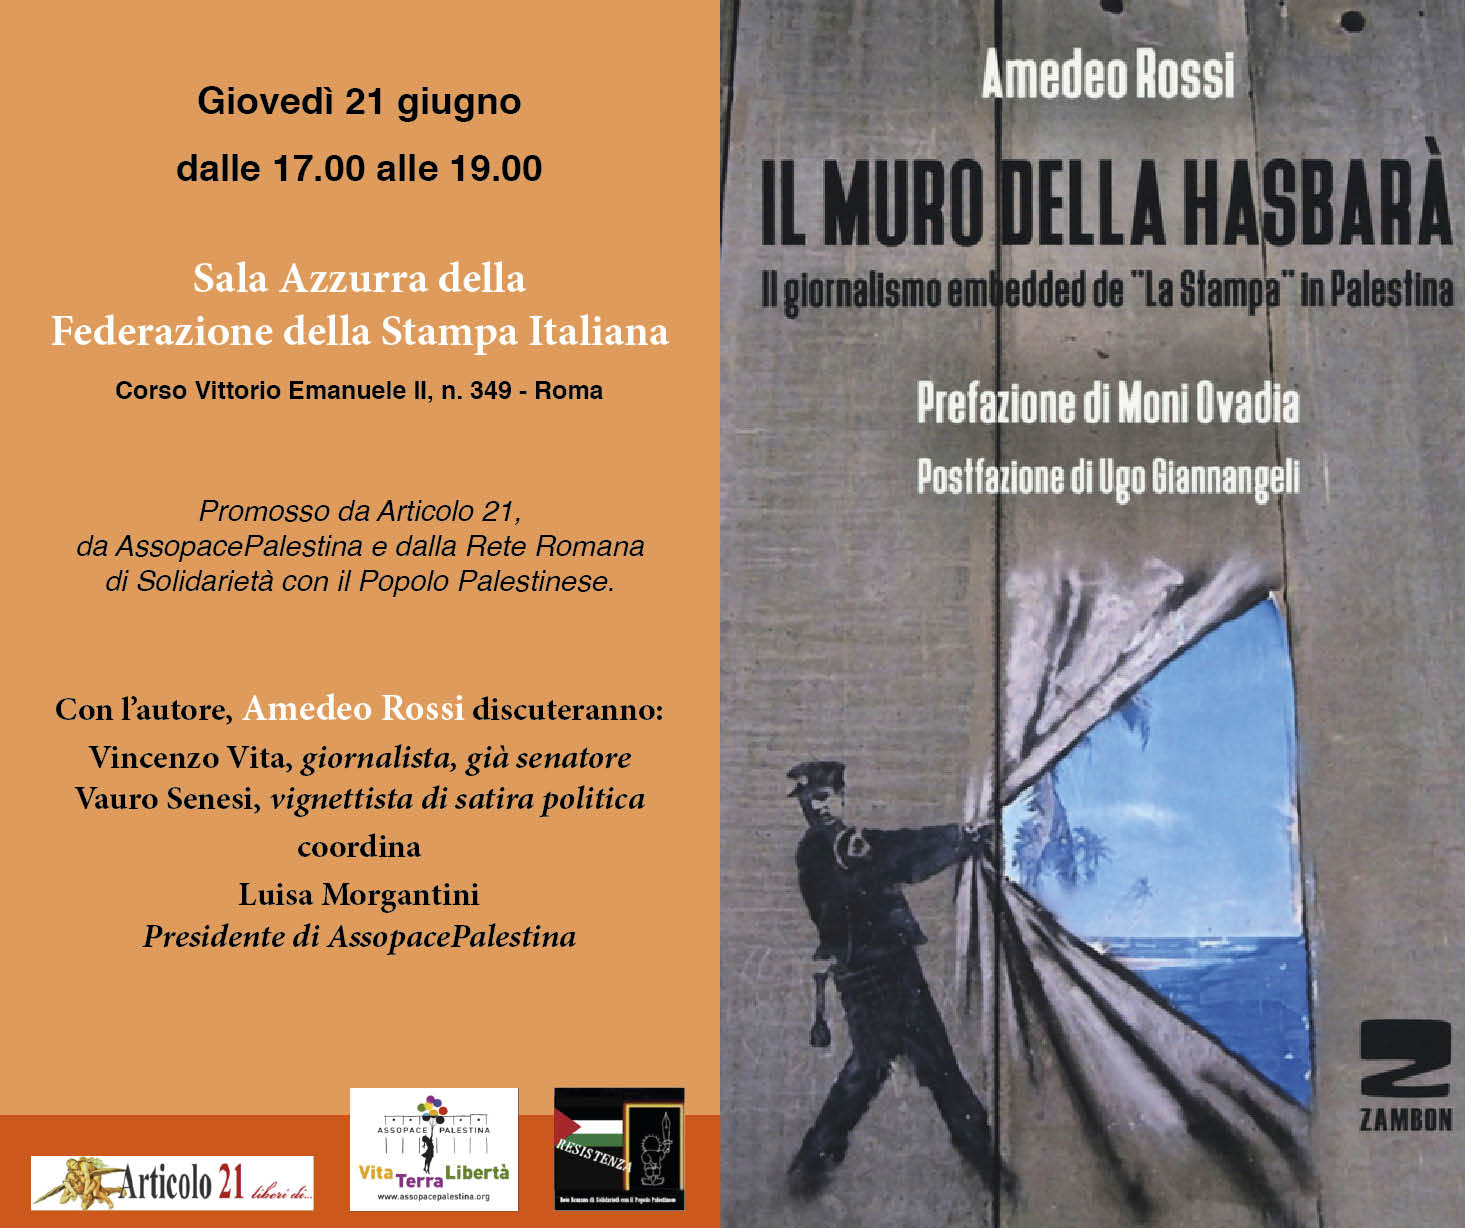 Roma 21 giugno: presentazione del libro “Il muro della hasbarà” di Amedeo Rossi.